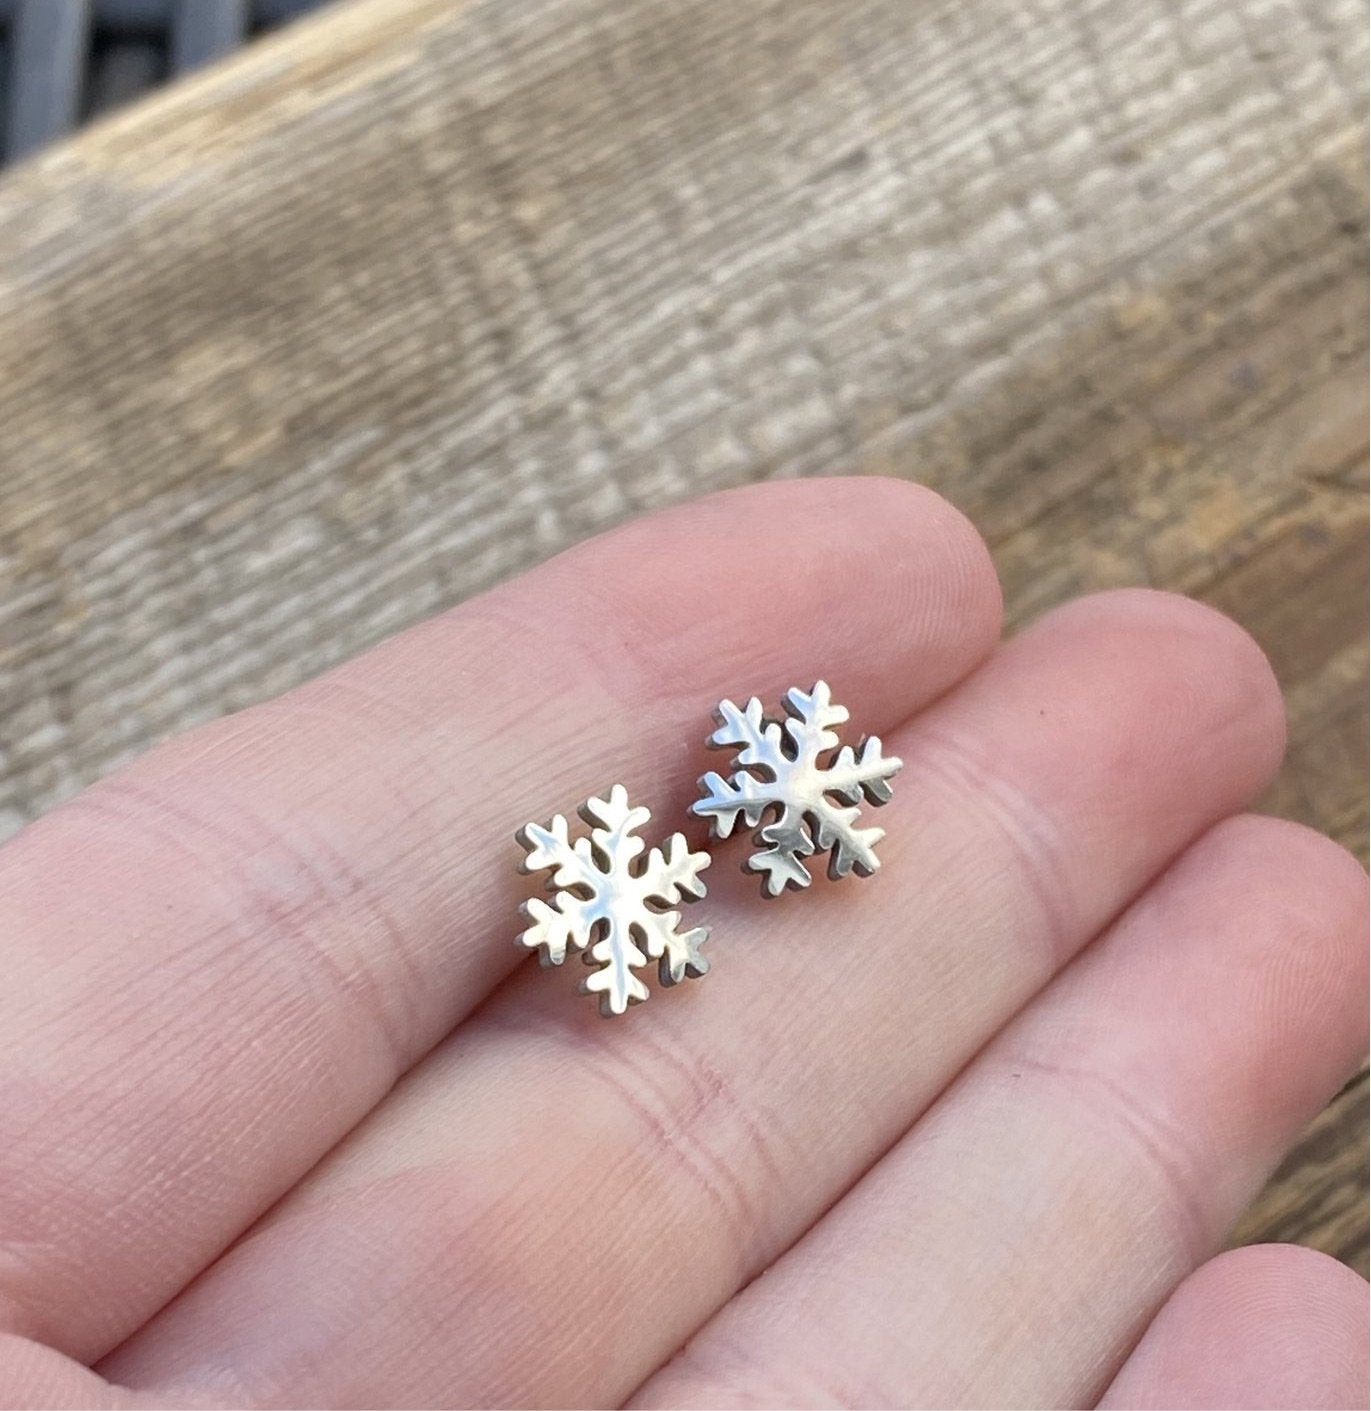 Stainless steel snowflake stud earrings